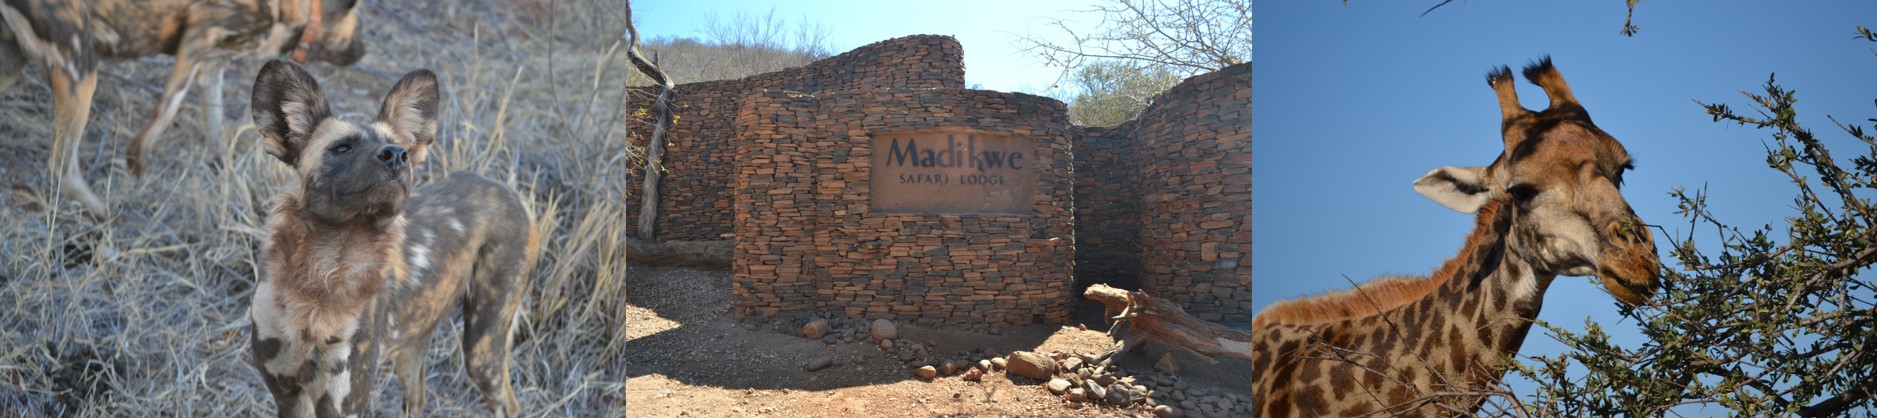 Madikwe Blogs